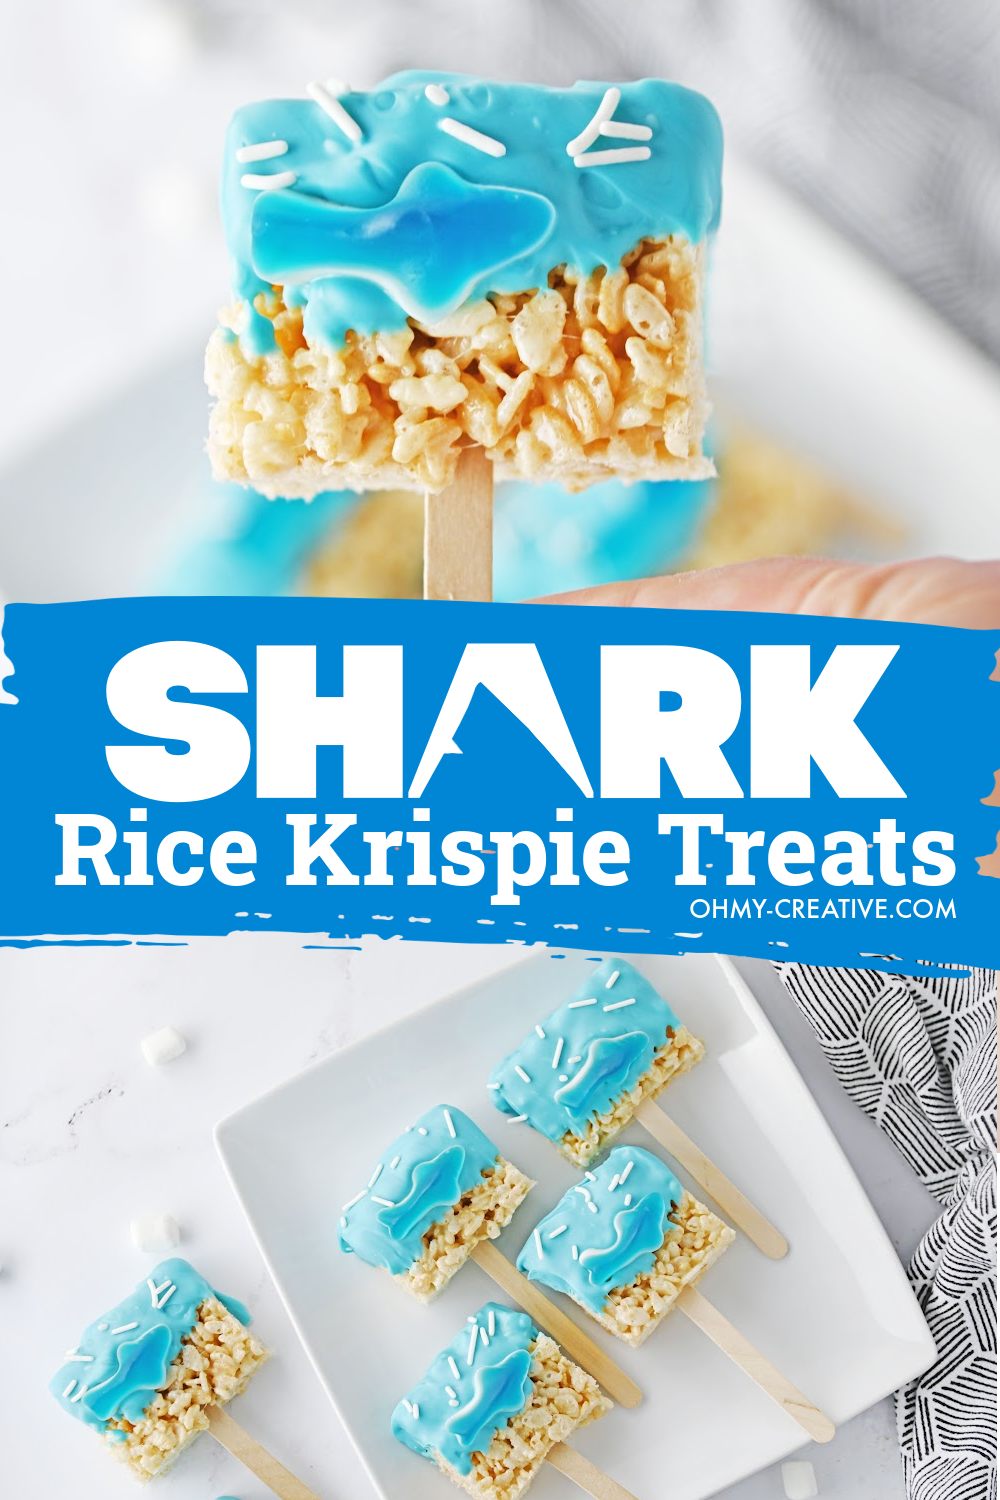 Pinterest image of shark Rice Krispie treat pops on a white plate.